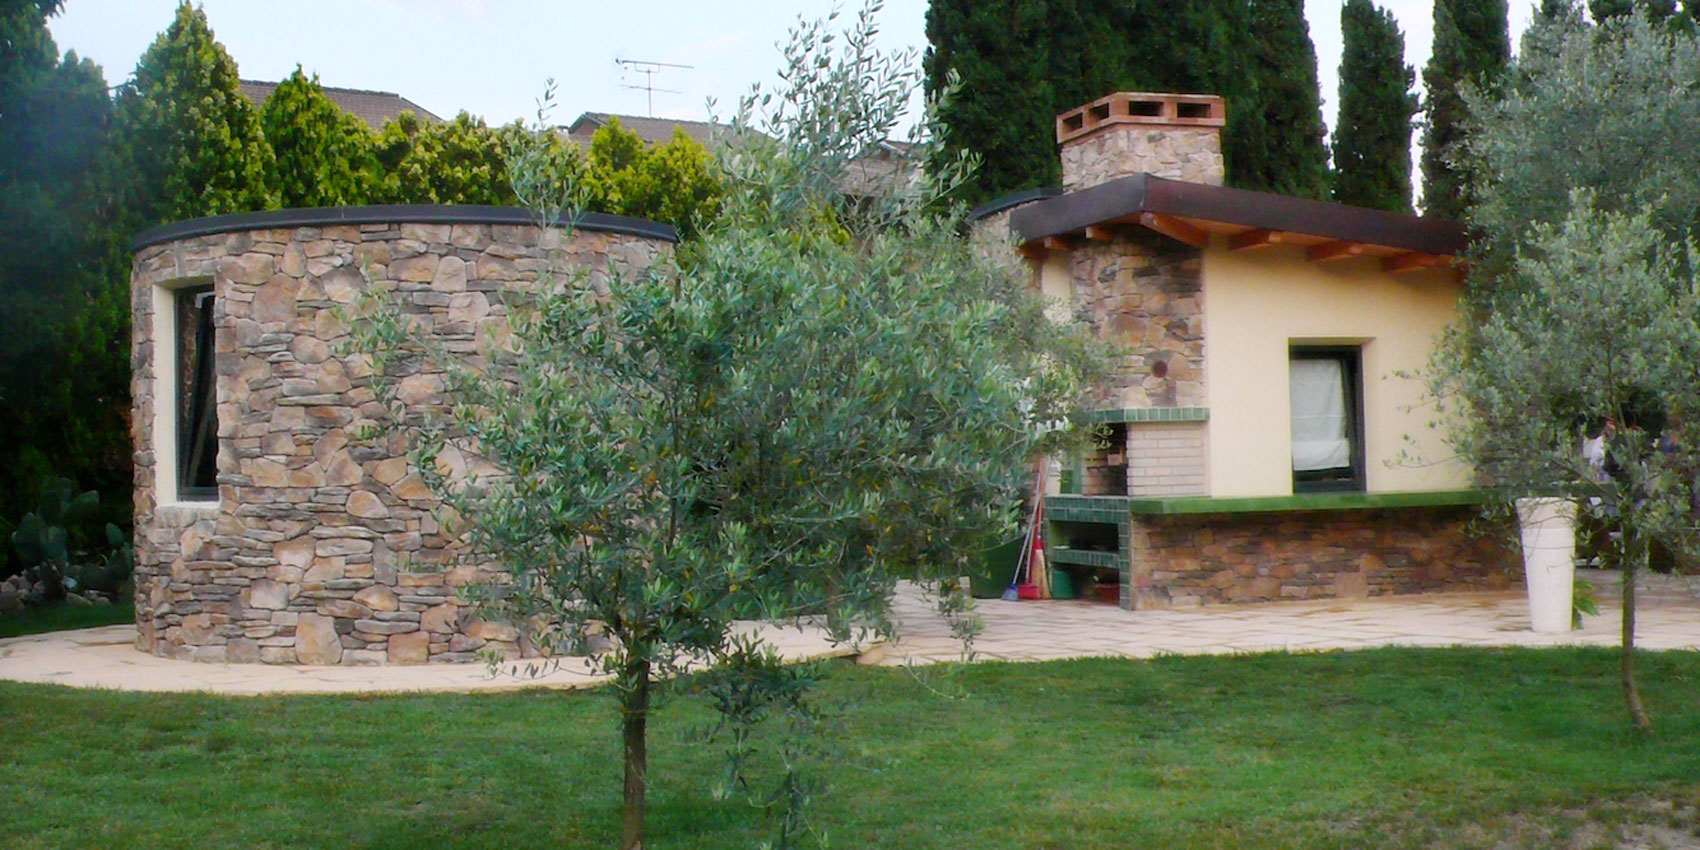 Private Residence in Ceparana - Marco Bonfigli Architect